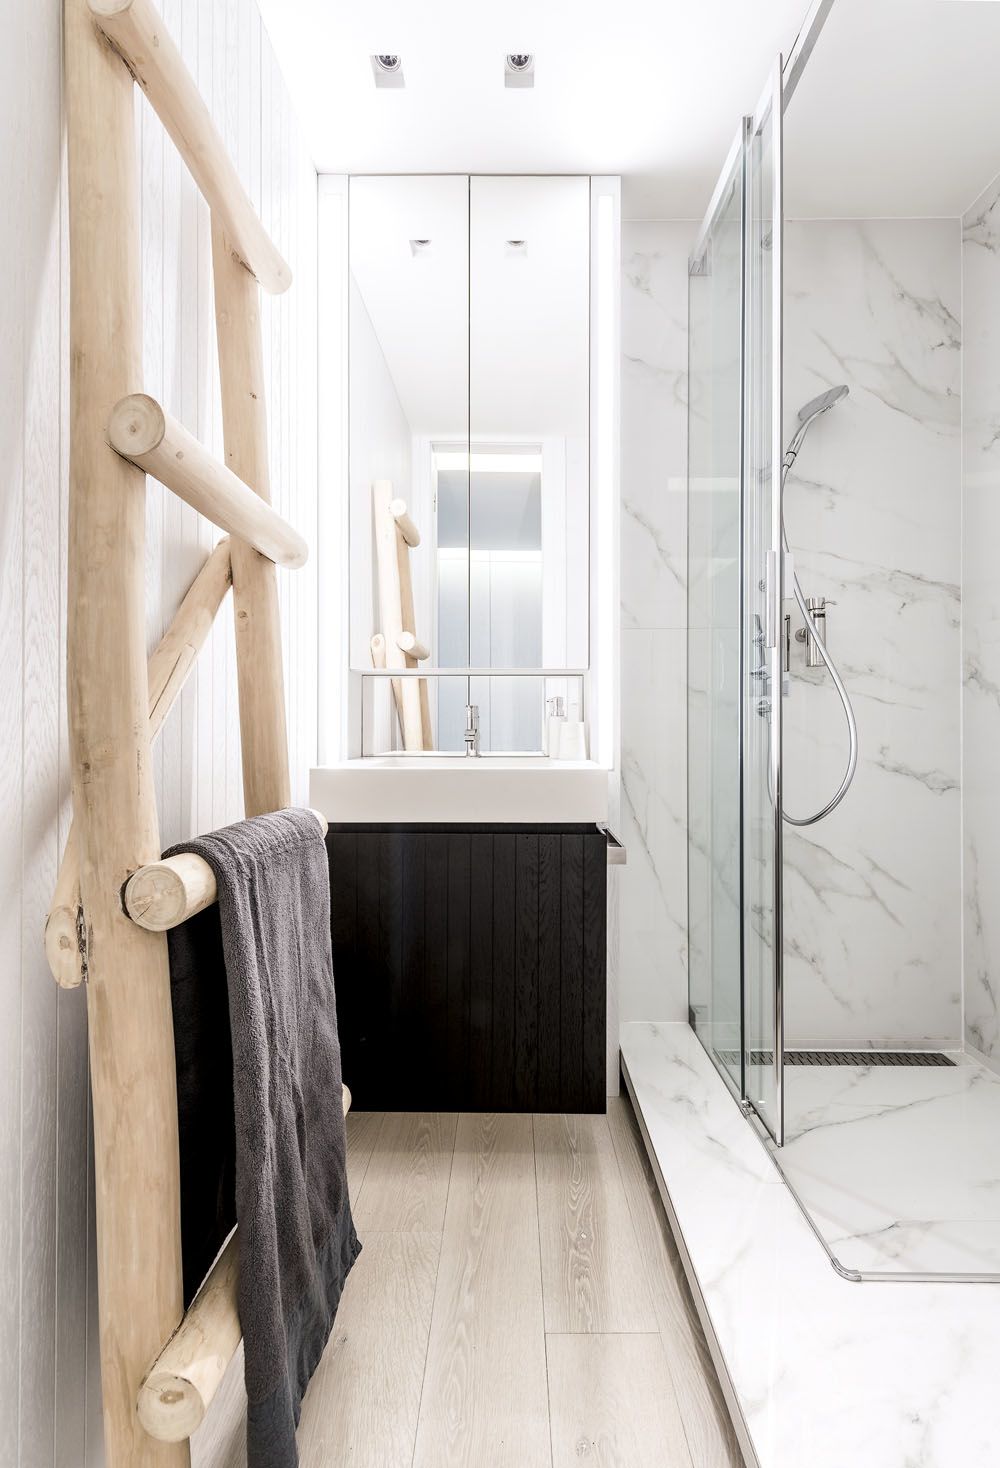 Koupelna ve spodním podlaží je vybavena prostorným sprchovým koutem obloženým keramickým mramorem.